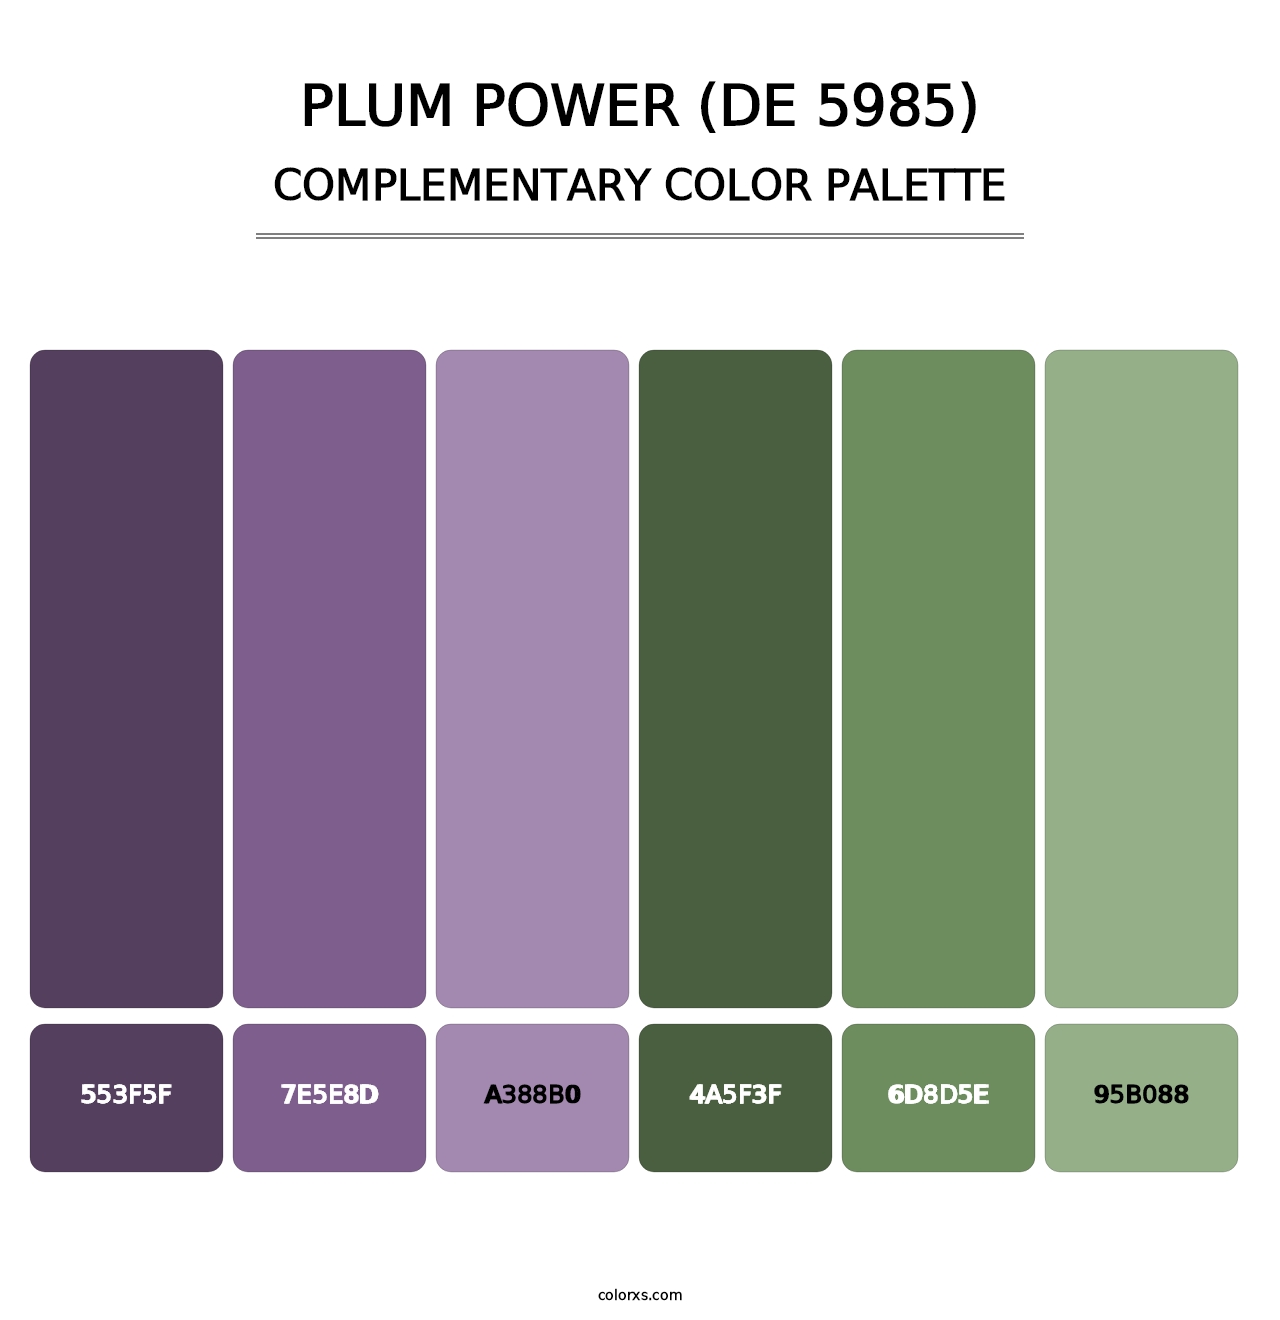 Plum Power (DE 5985) - Complementary Color Palette